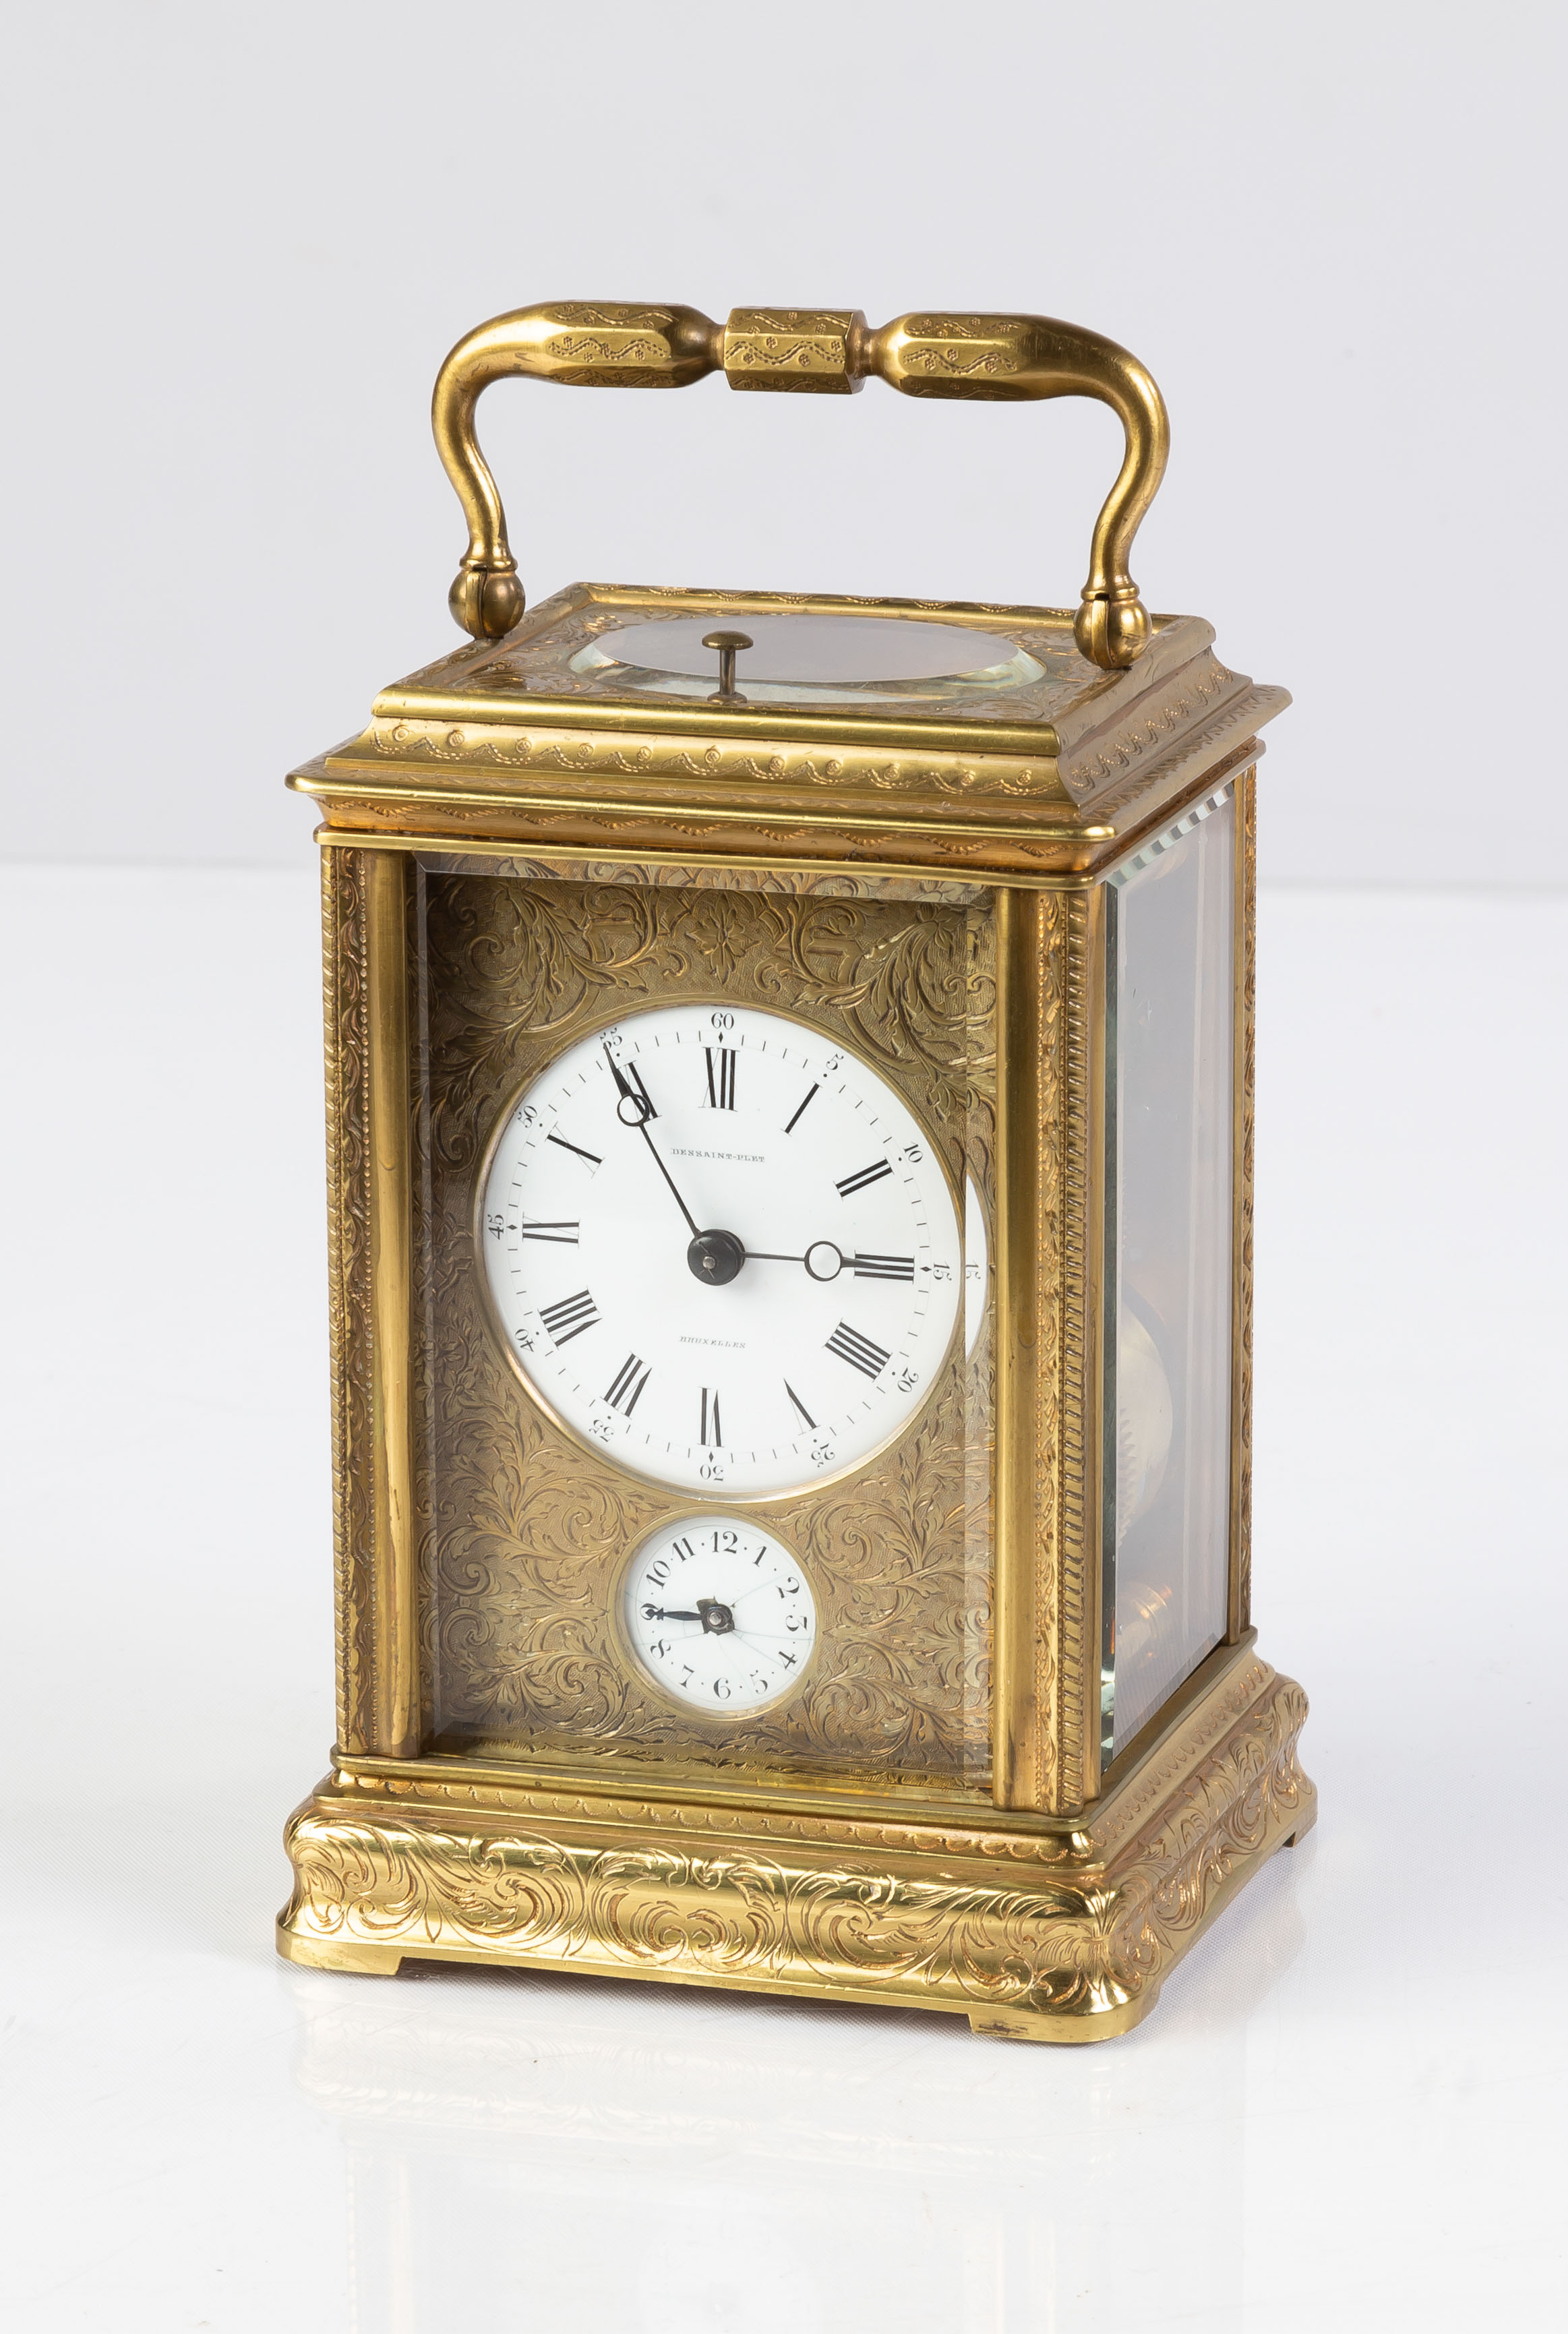 Dessaint-plet Bruxelles Carriage Clock | Cottone Auctions